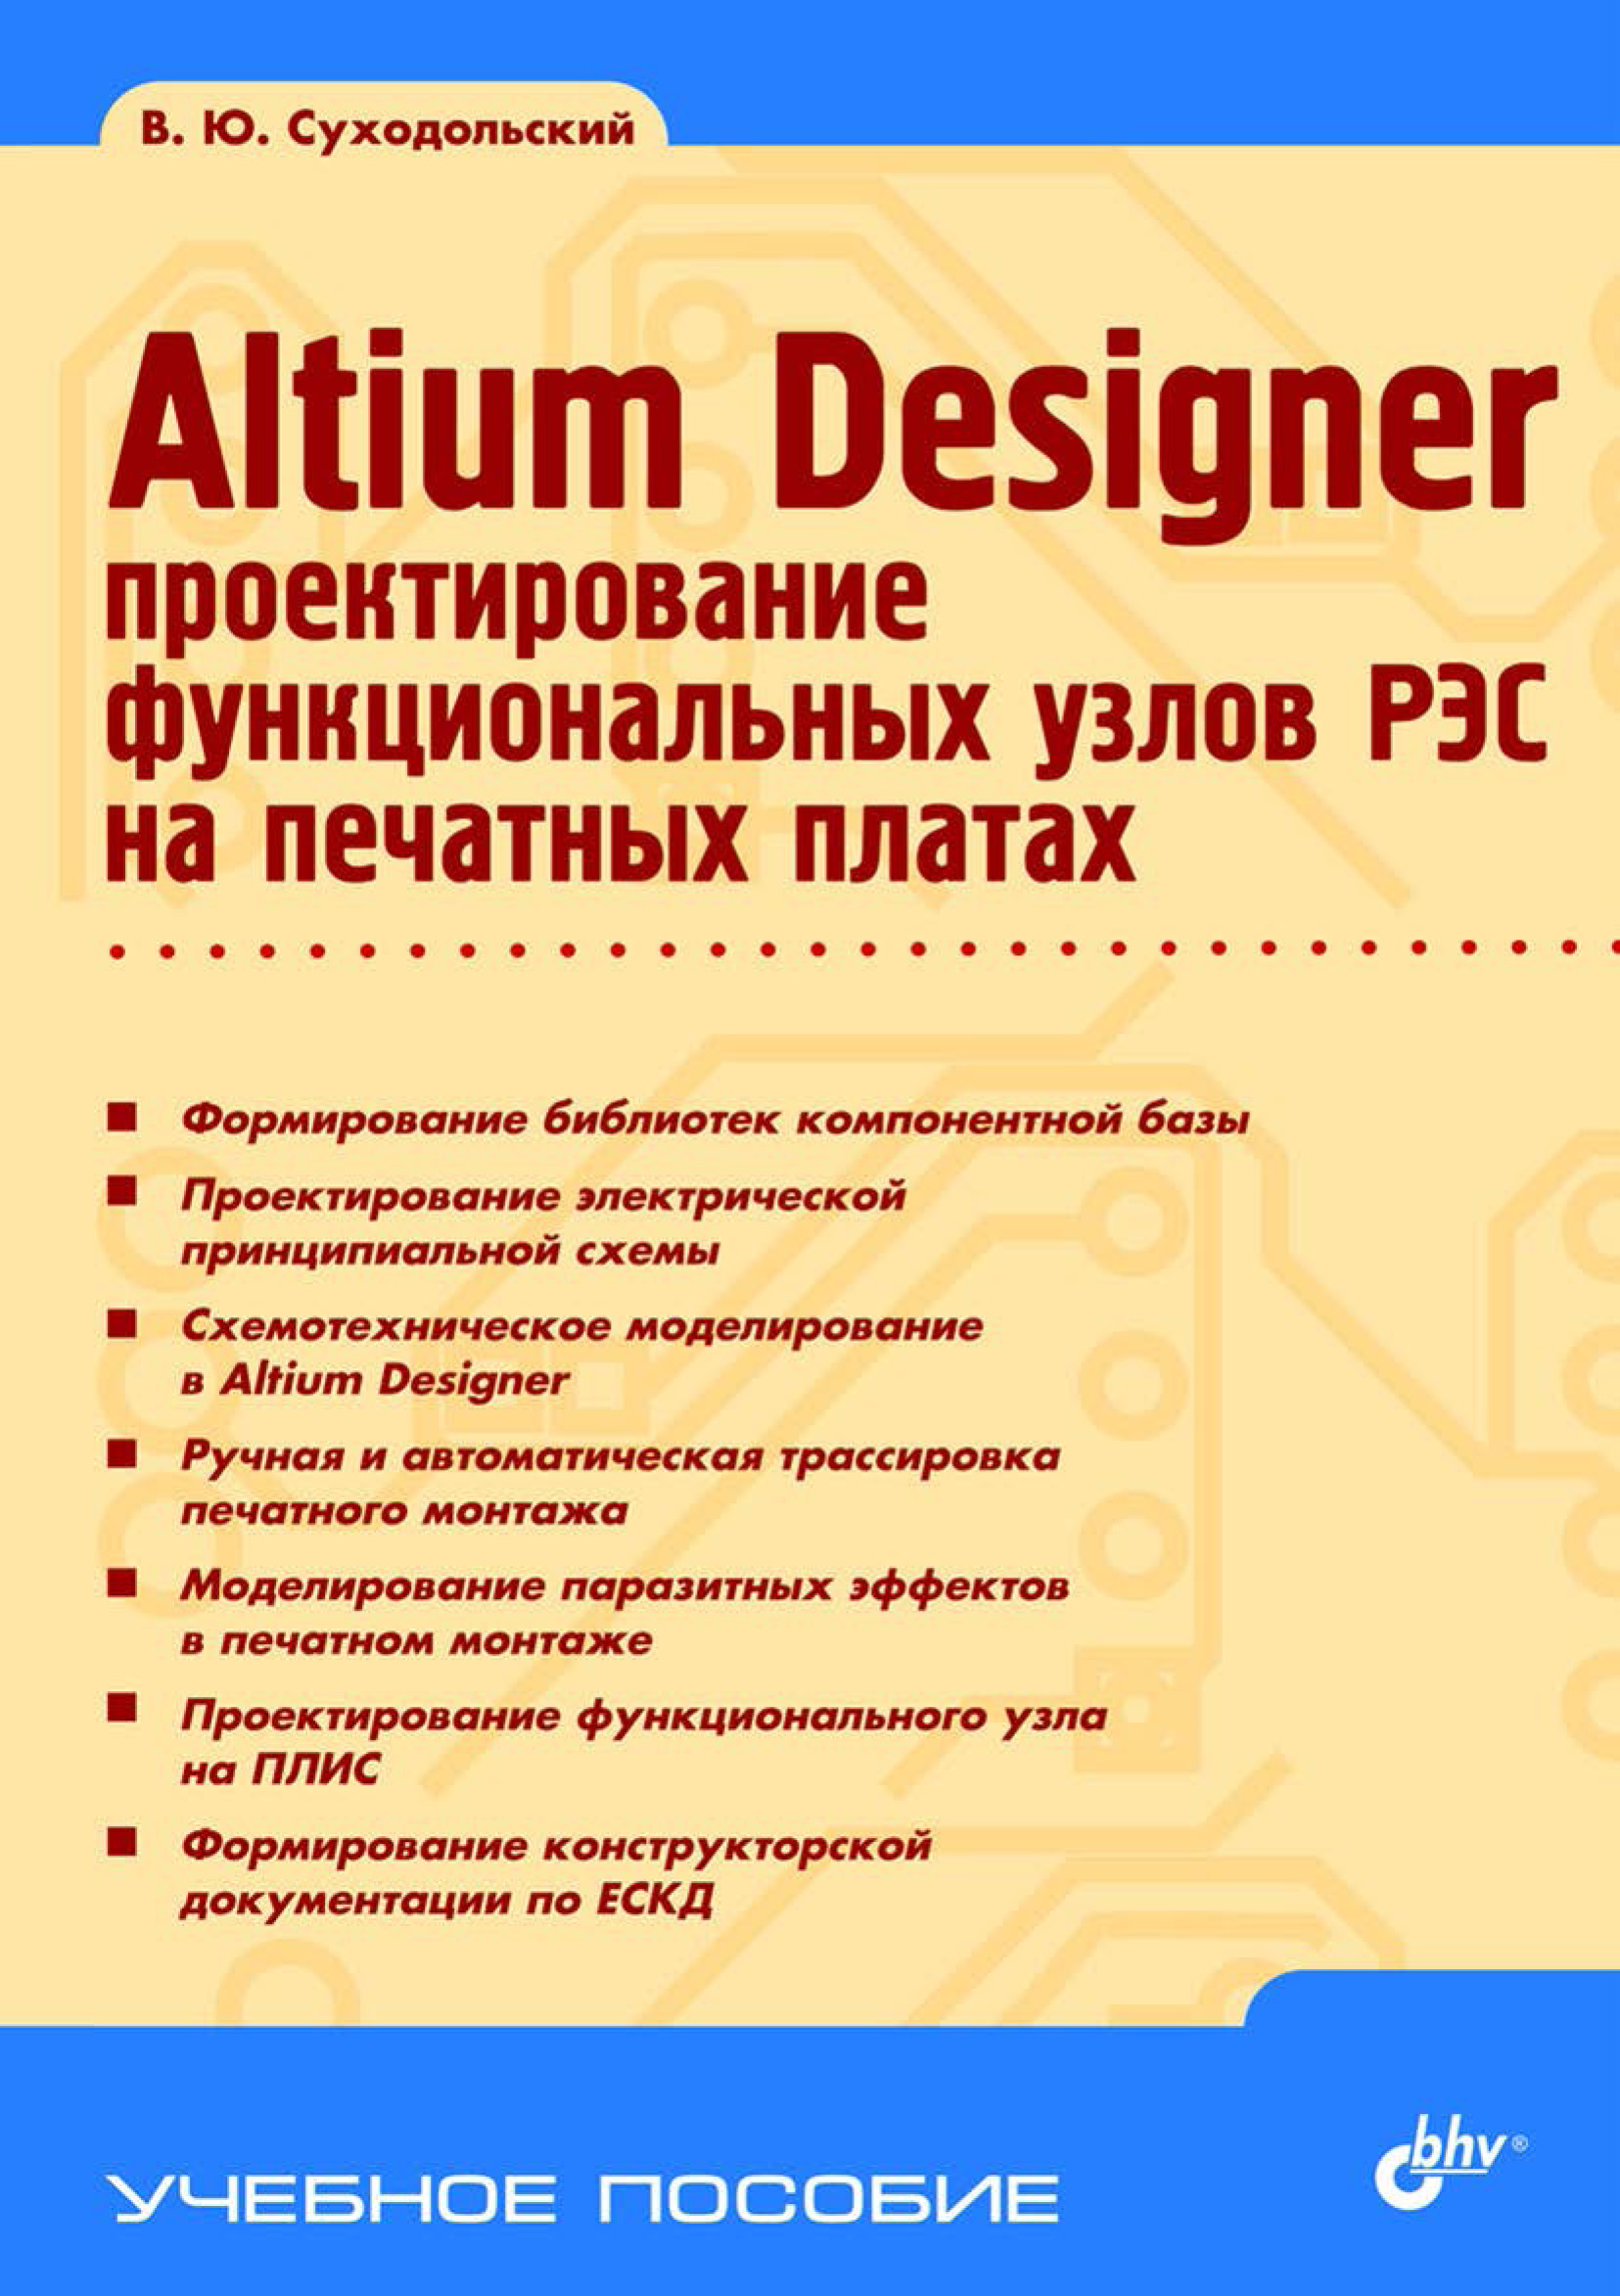 Altium Designer.Проектирование функциональных узлов РЭС на печатных платах